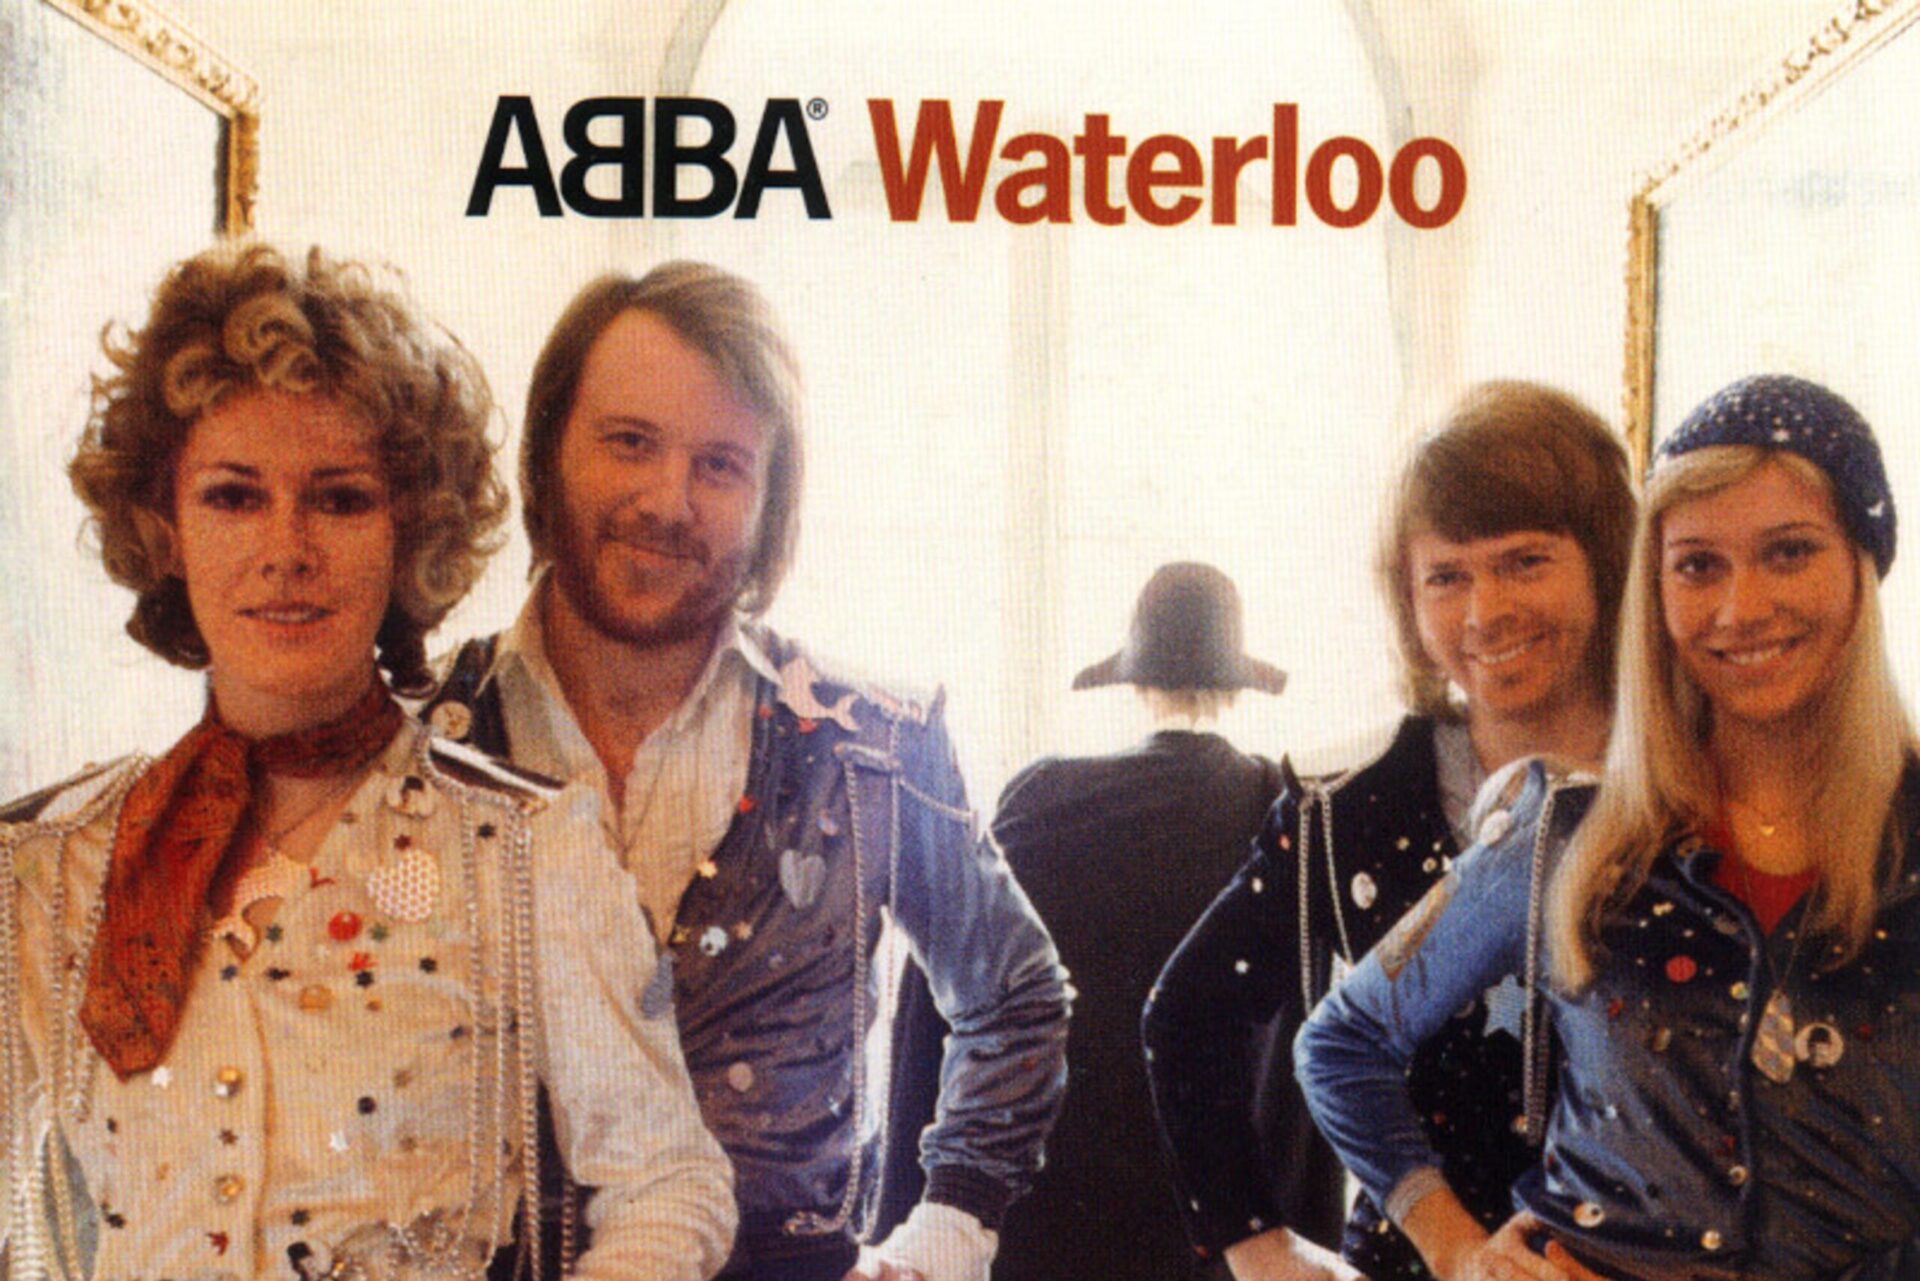 Nu kan du höra ABBA-låten ”Waterloo” i Dolby Atmos